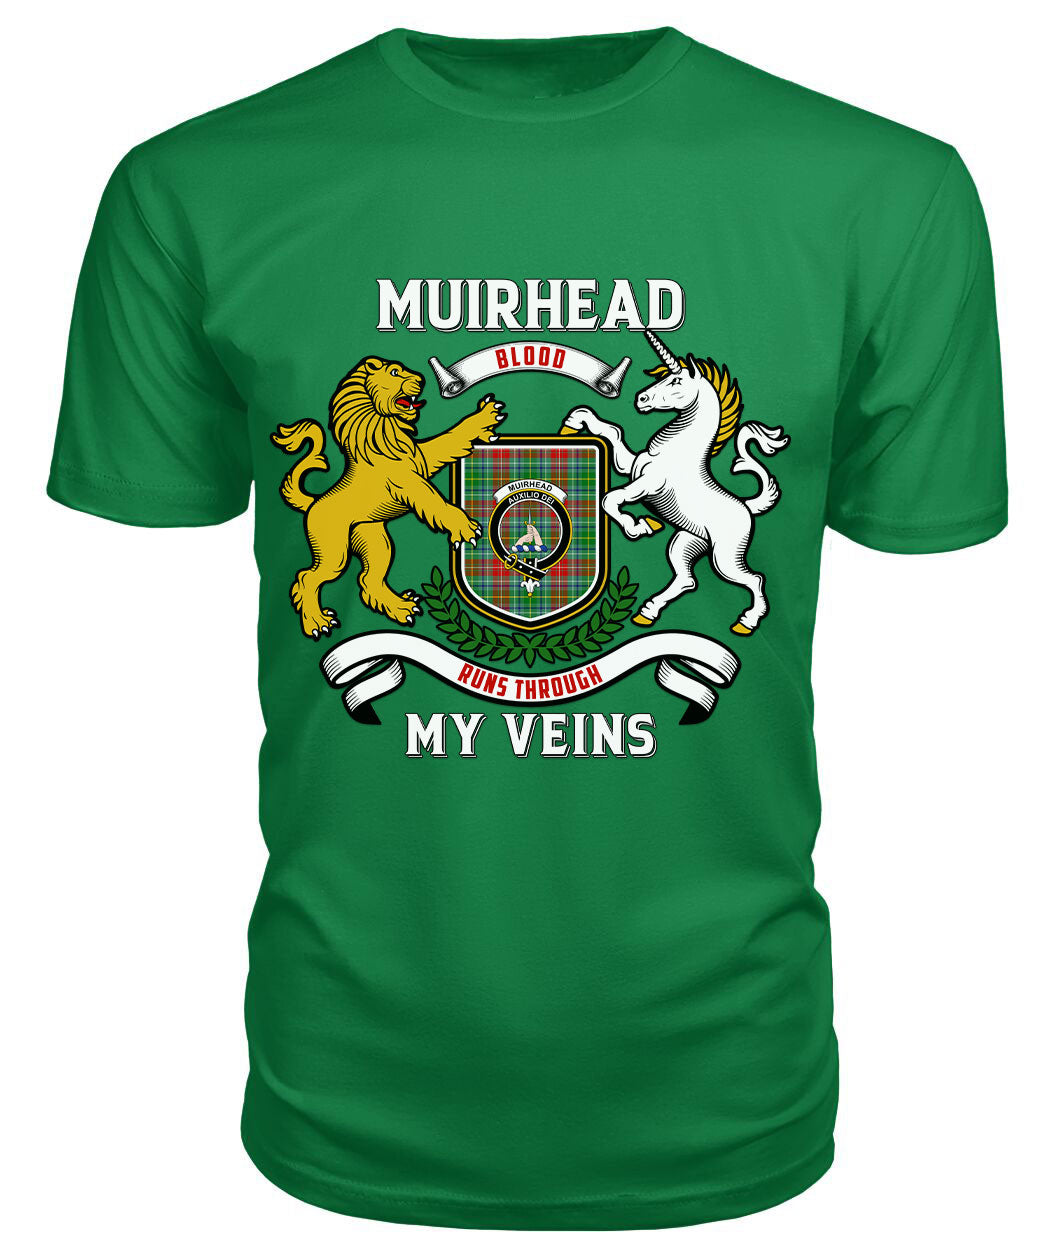 Muirhead Tartan Crest 2D T-shirt - Blood Runs Through My Veins Style